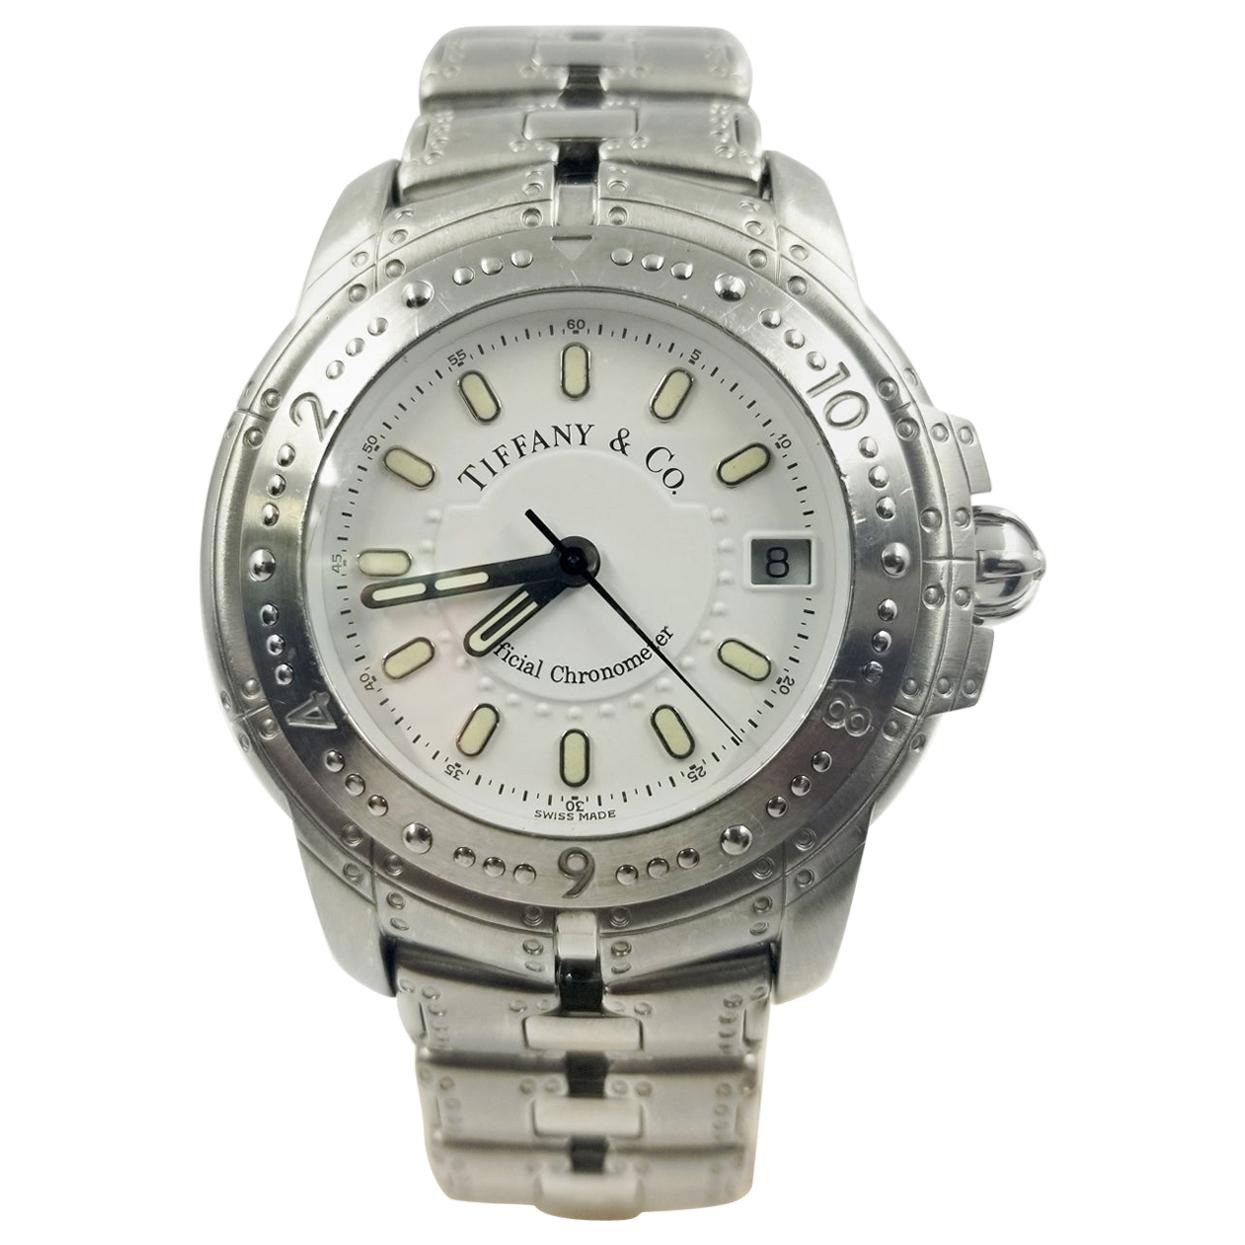 Tiffany & Co. Streamerica Automatic Chronometer Wristwatch